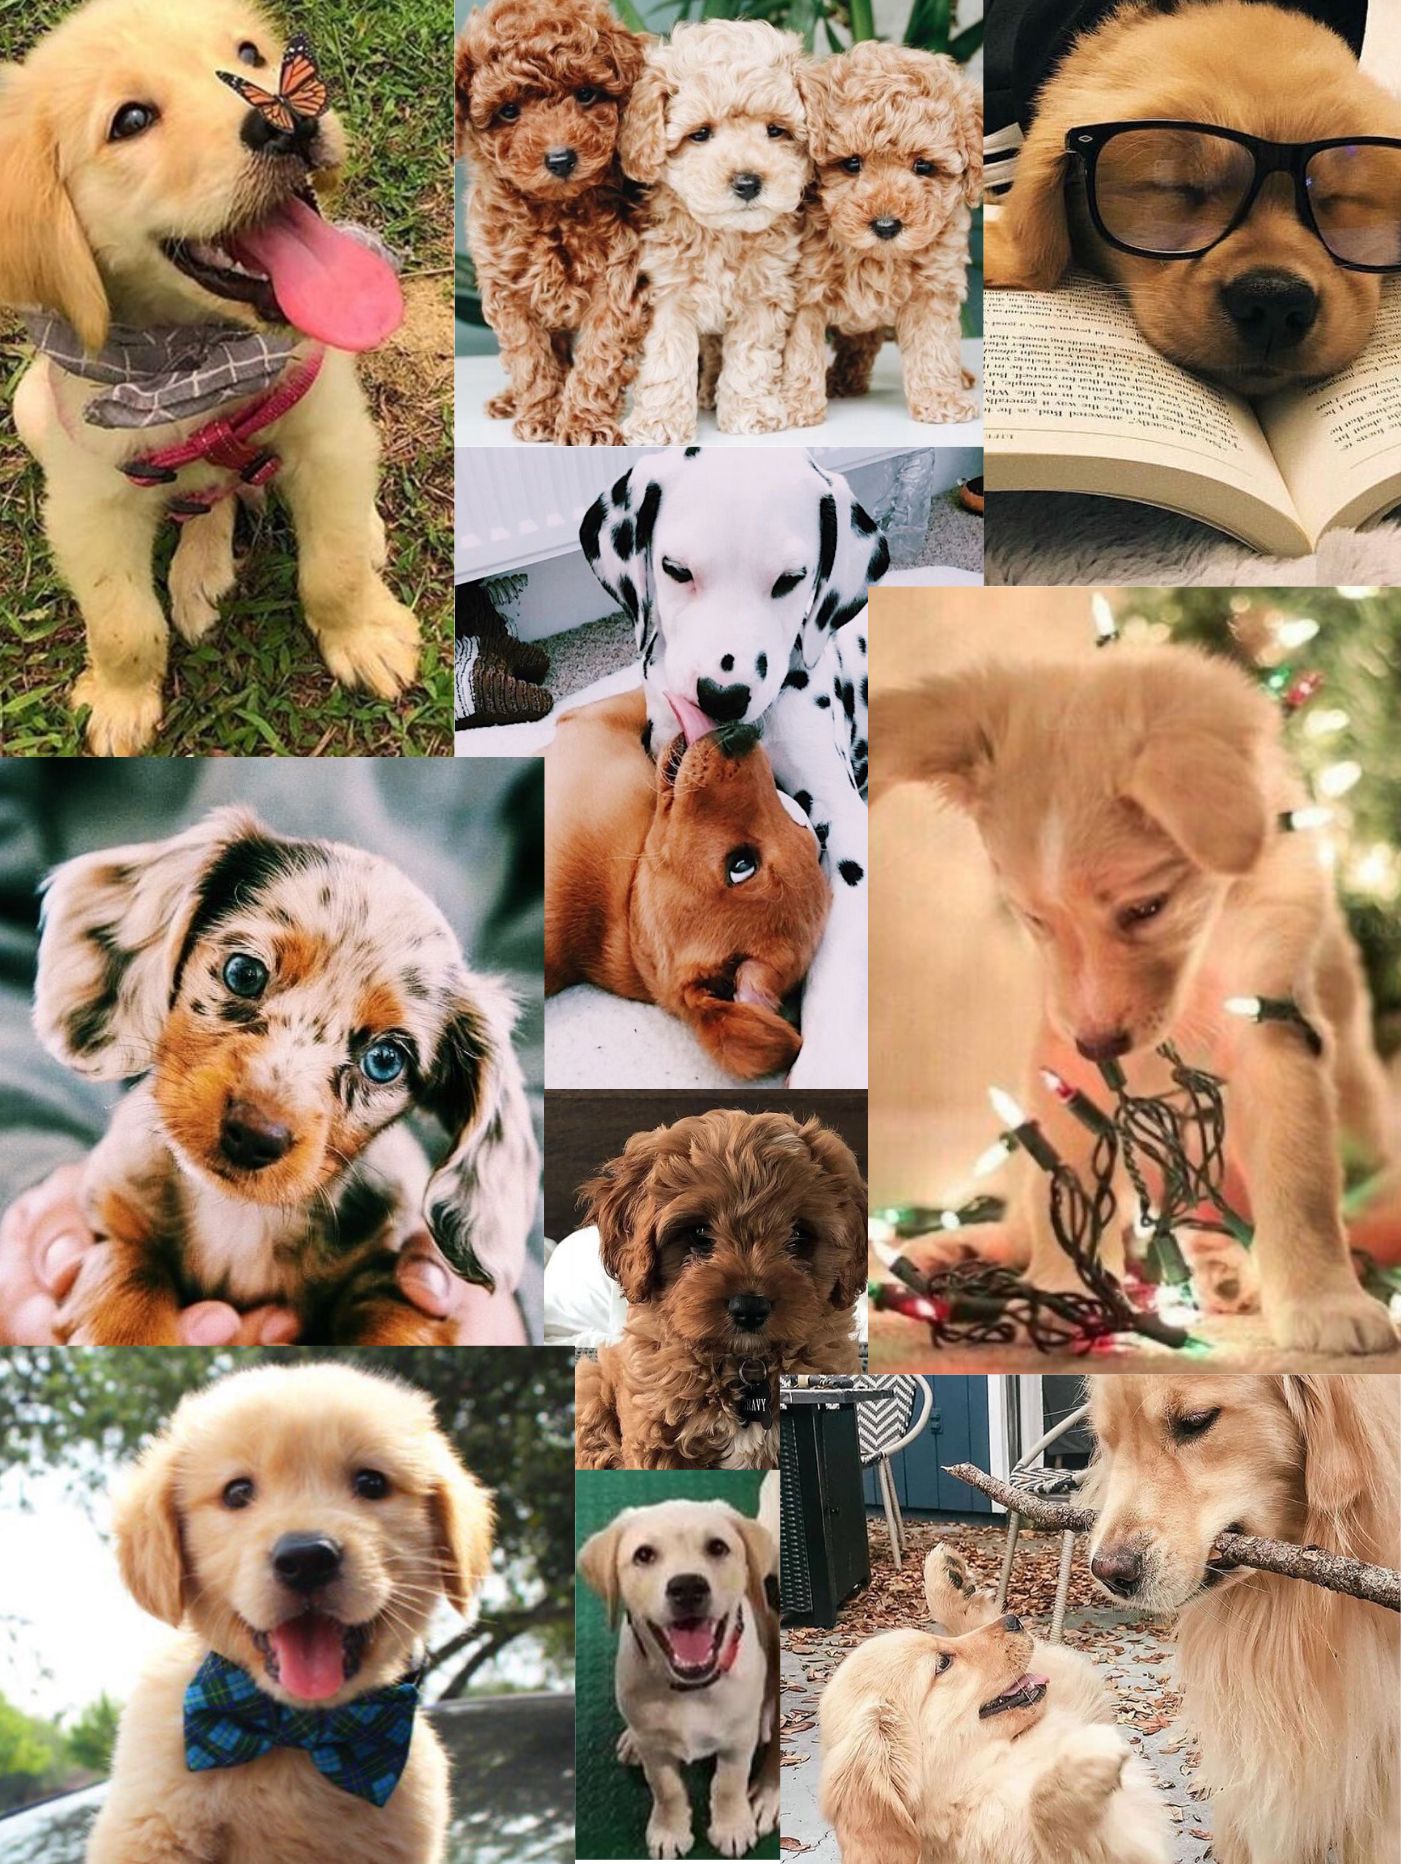 aesthetic dog wallpaper. Dog wallpaper, Cute dog wallpaper, Cute little animals